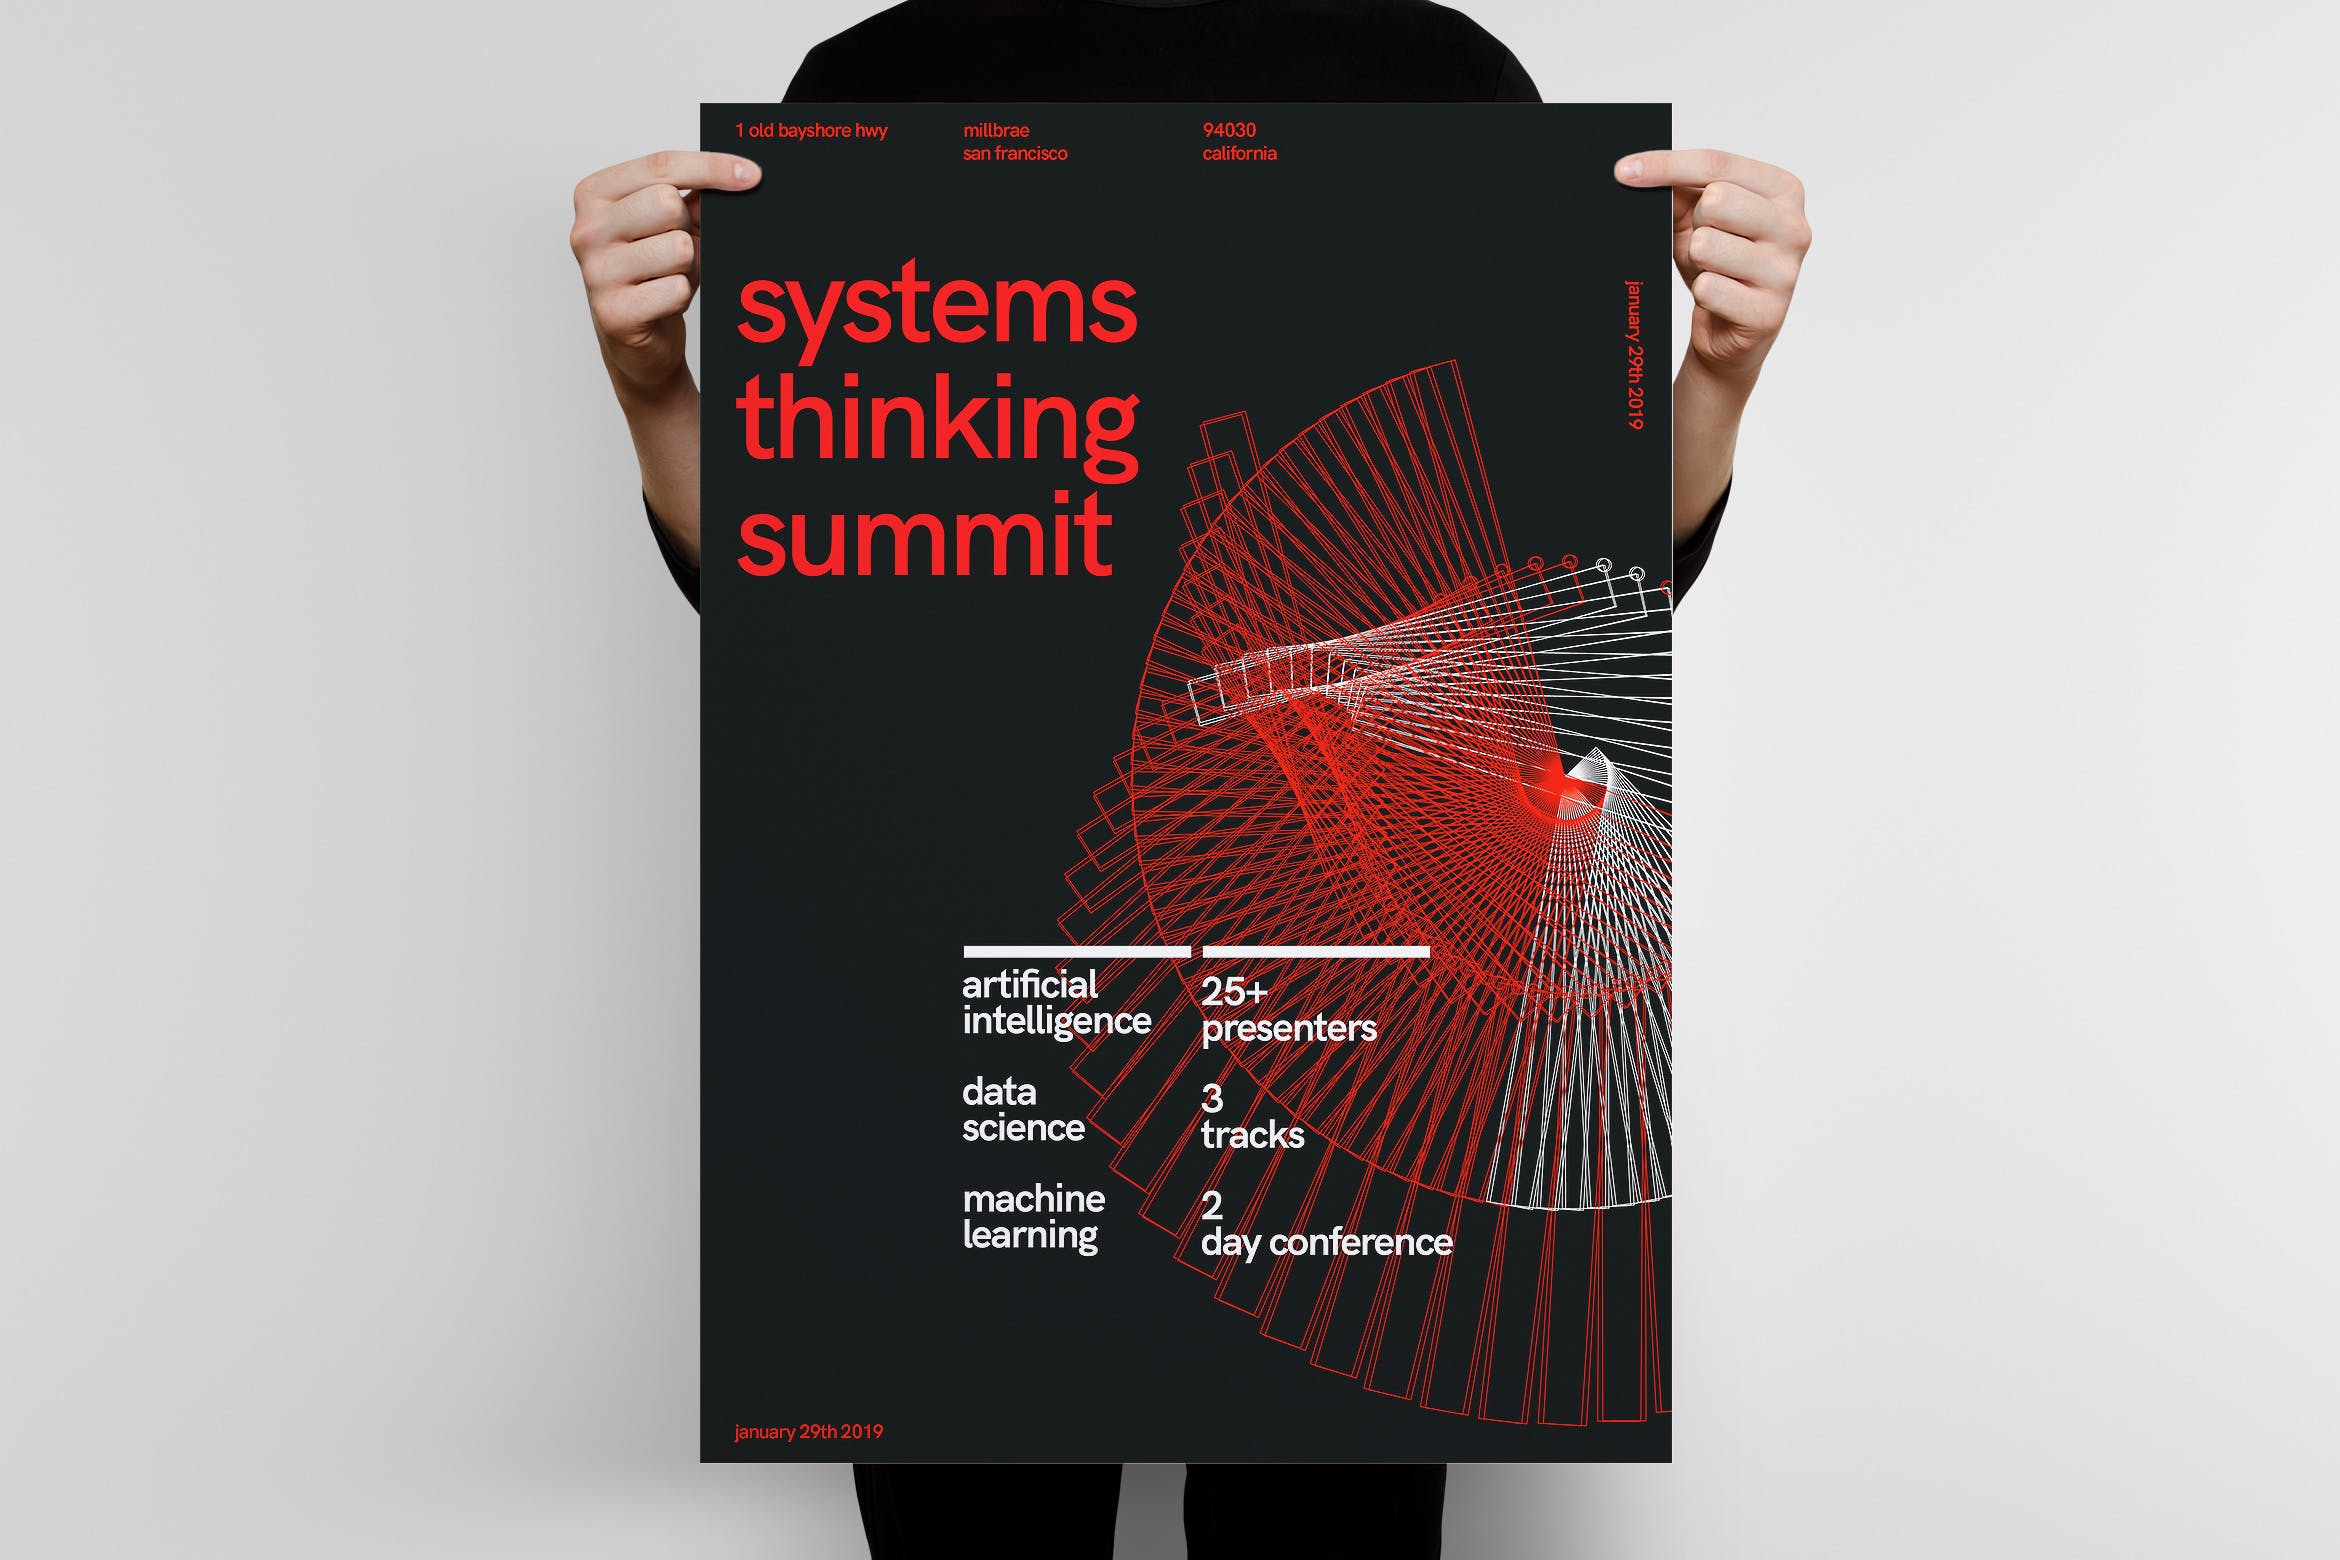 行业峰会大型会议宣传海报设计模板v1 Systems Thinking Summit Poster Template插图